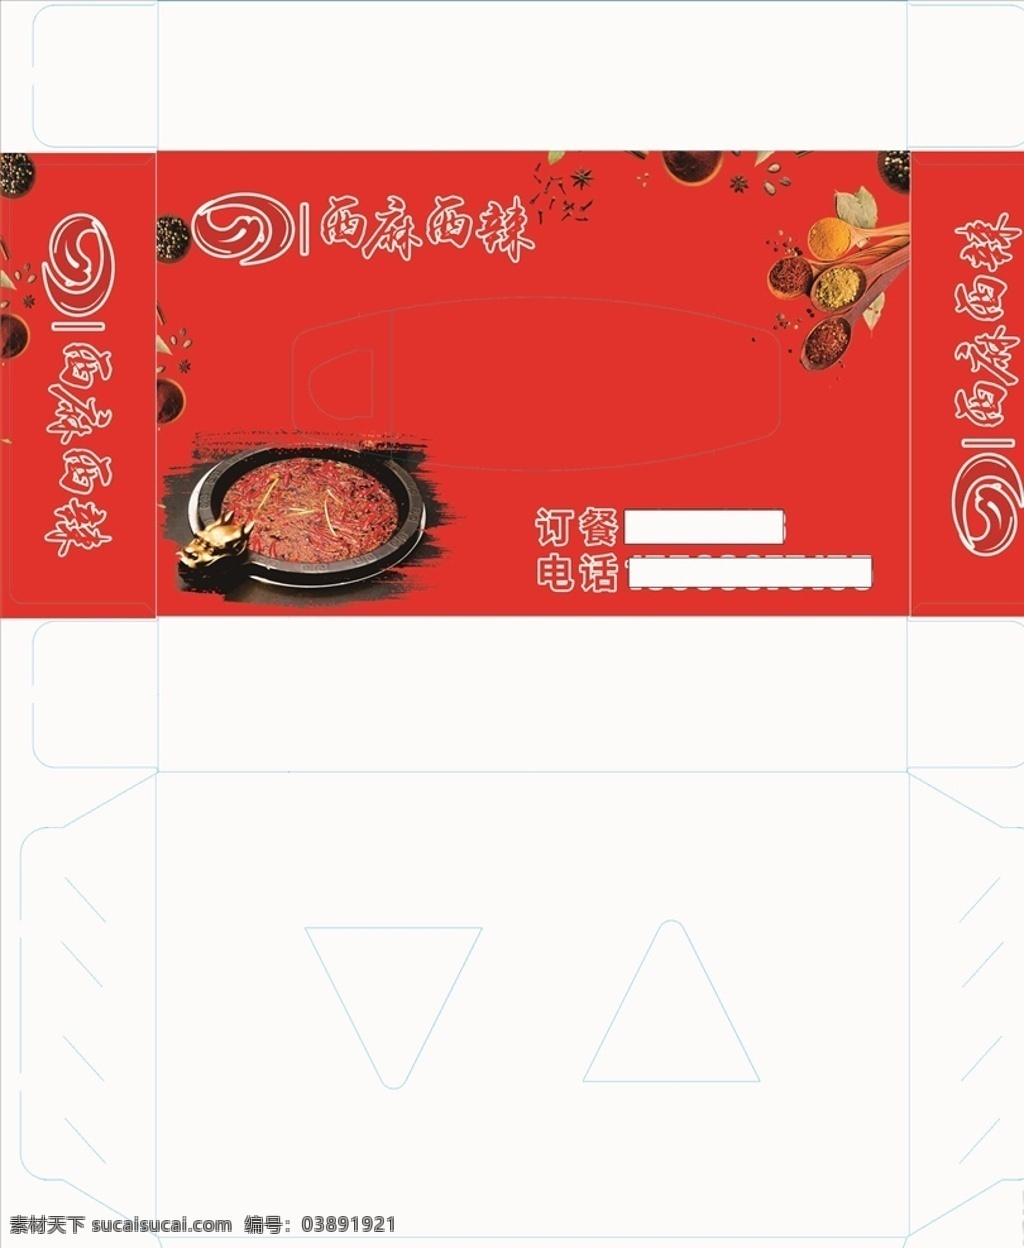 餐饮 火锅 配料 西麻西辣图片 西麻西辣 纸盒包装 简约 大气 包装设计 俗气